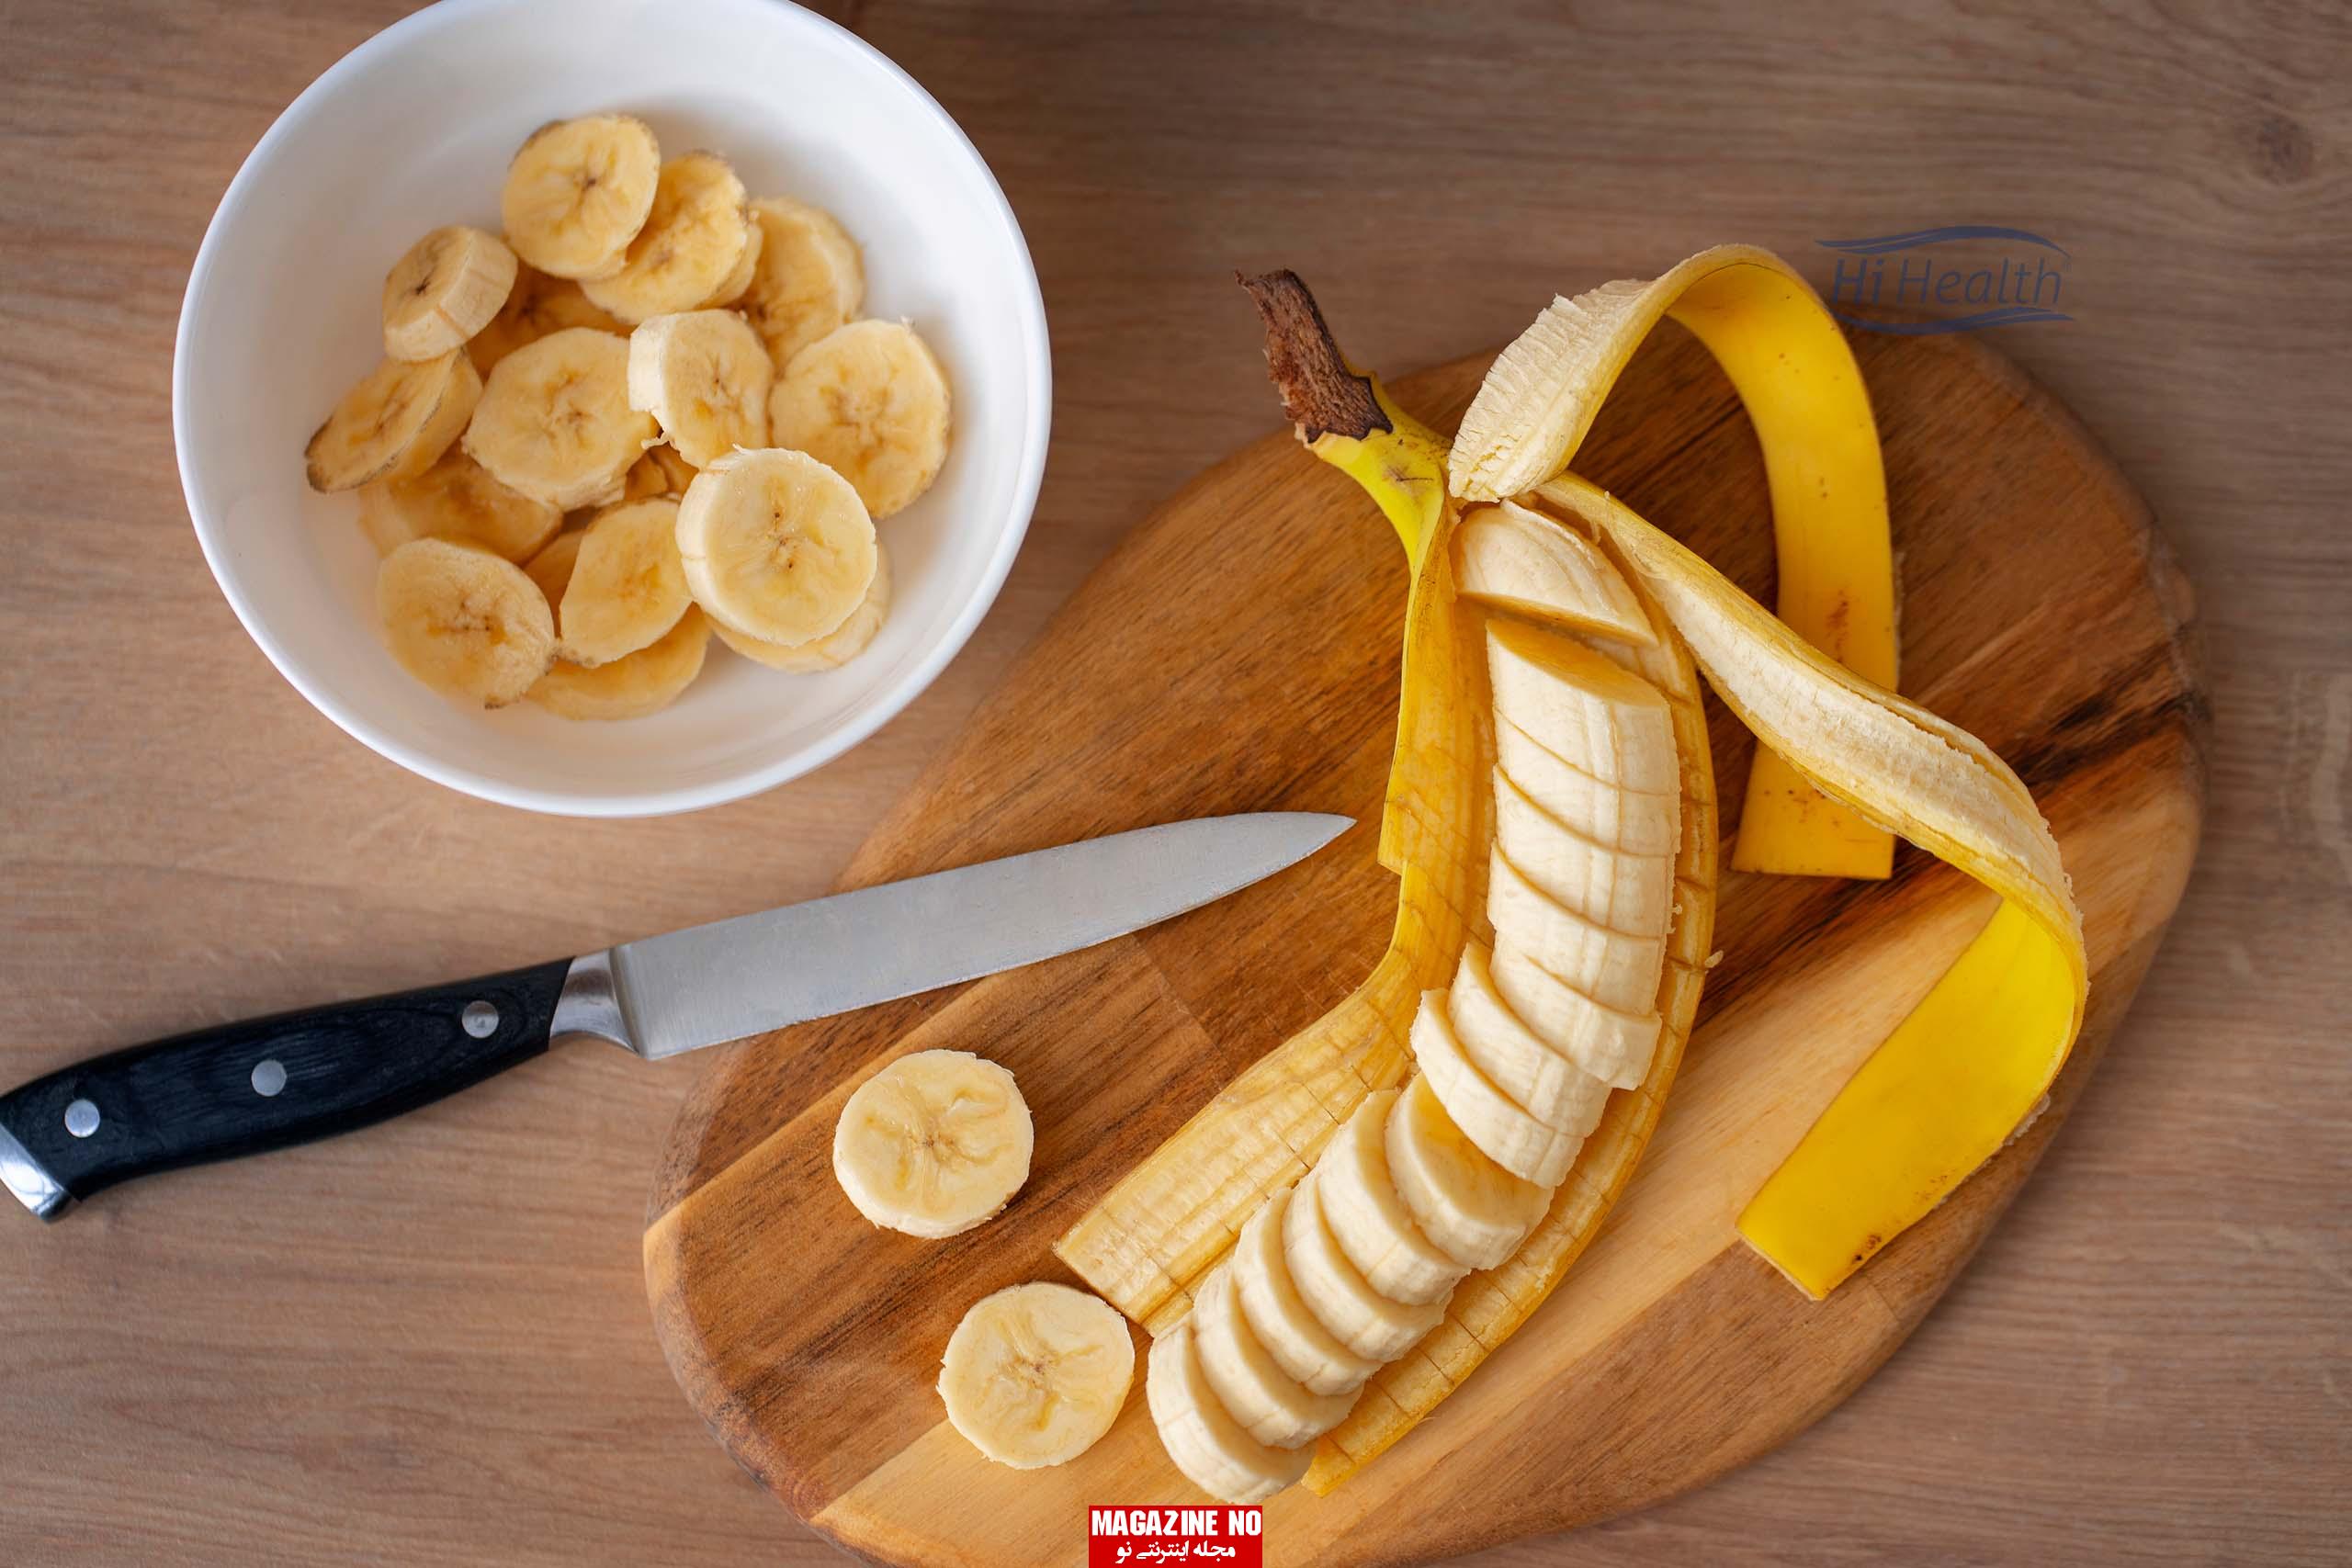 موز Banana| هرآنچه باید در مورد موز بدانید